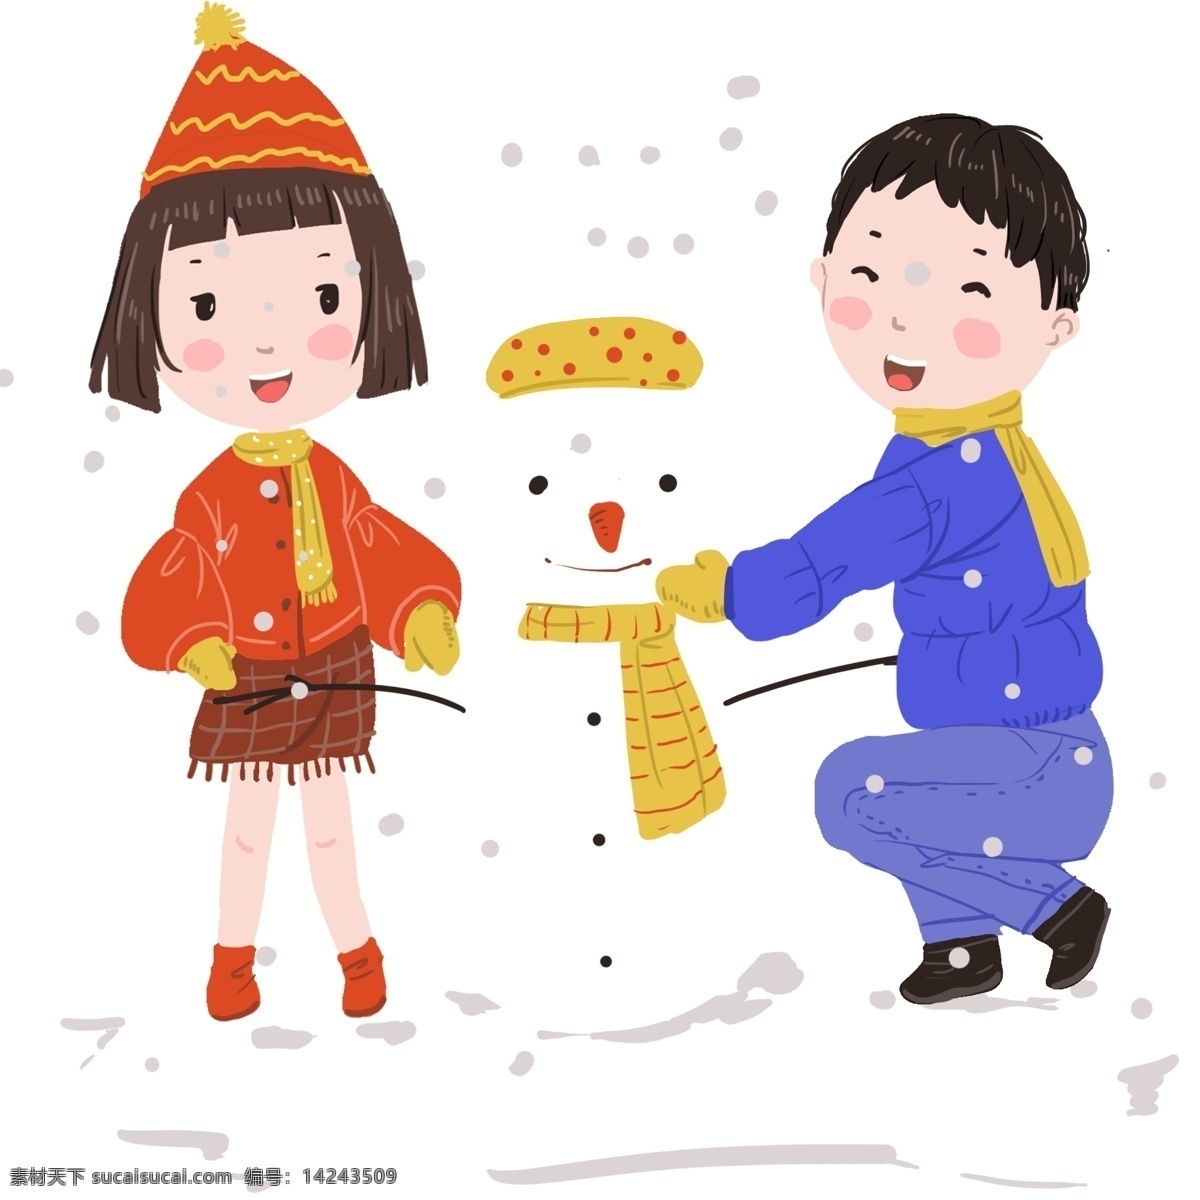 下雪天 亲子 之前 堆 雪人 冬天 温馨 小清新插画 黄色 雪花飞舞 愉快的时光 和蔼的爸爸 漂亮的雪人 开怀大笑 小女孩